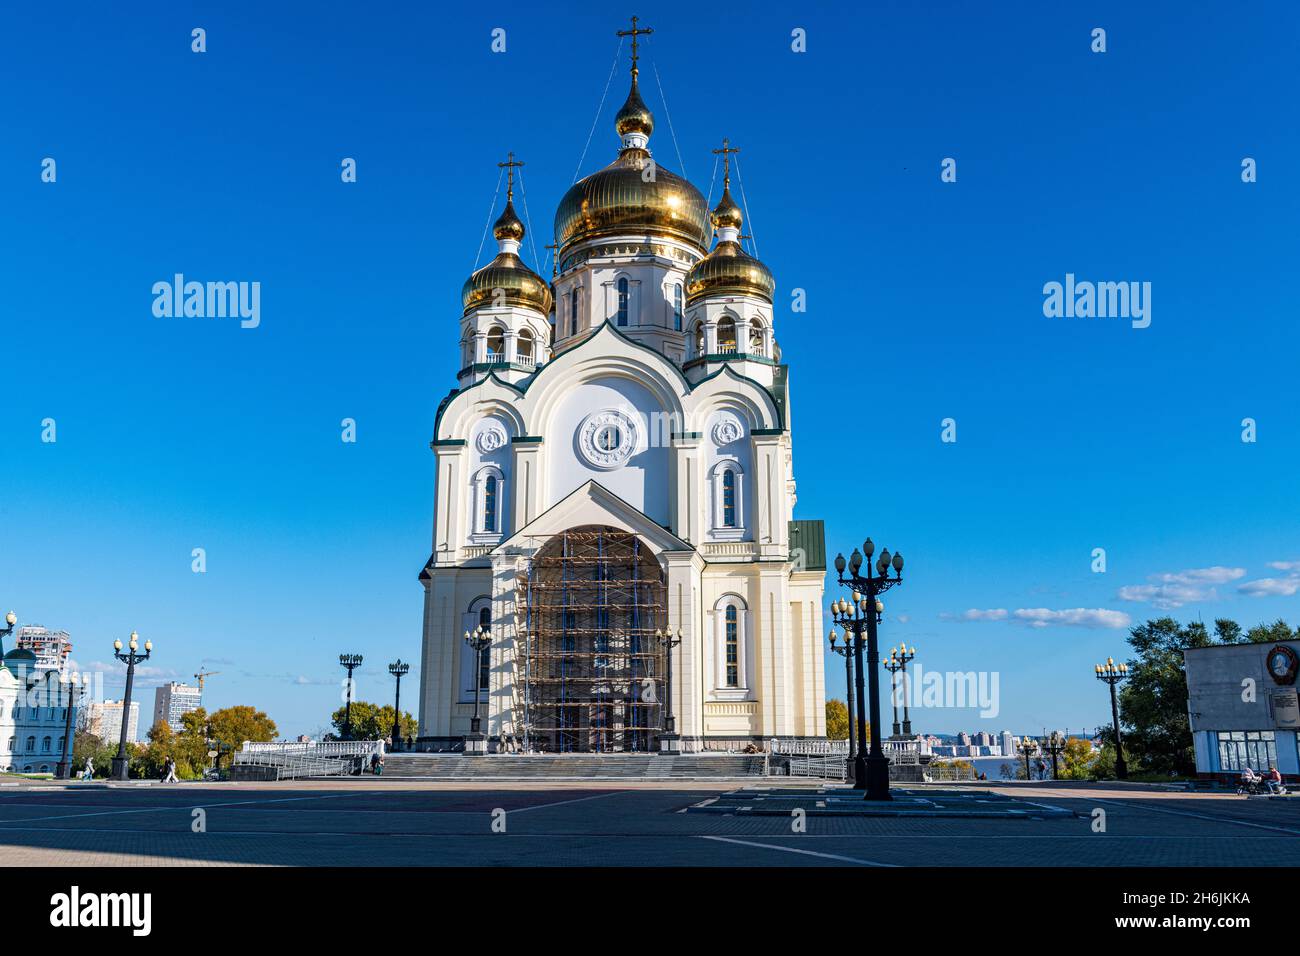 Spaso-Preobrazhensky Cathedral, Khabarovsk, Khabarovsk Krai, Russia, Eurasia Stock Photo